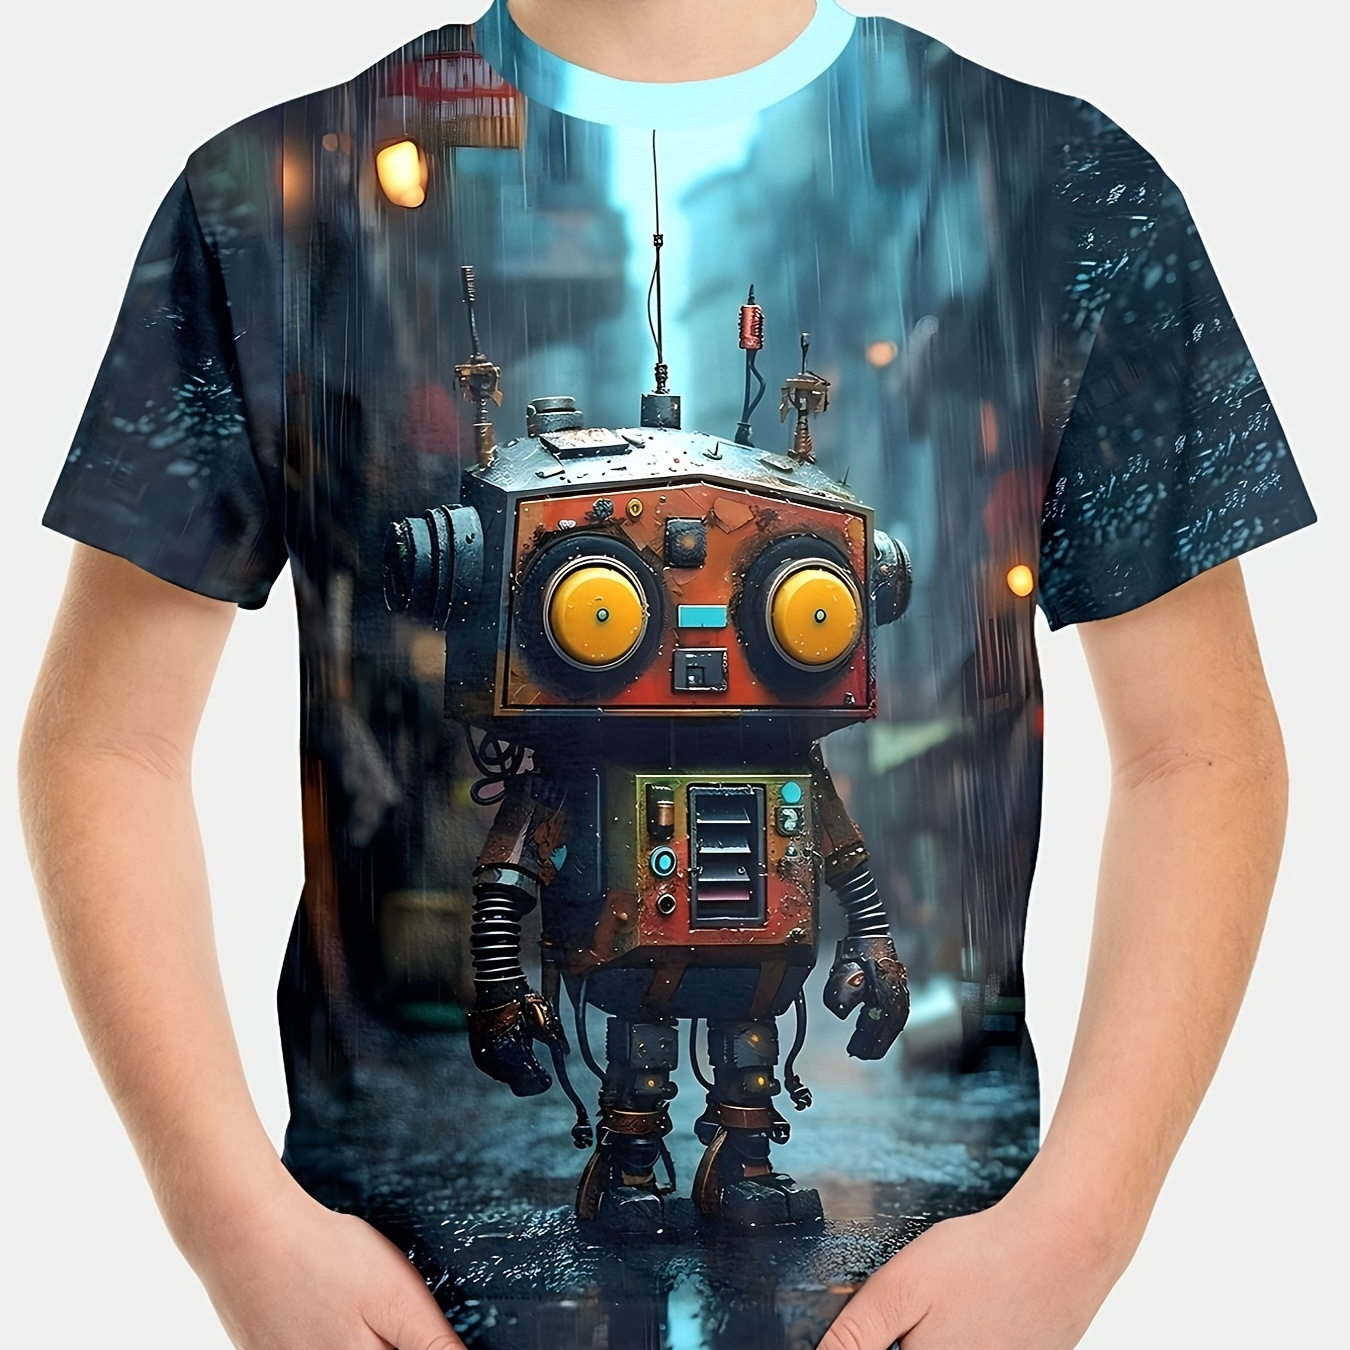 

Cute Robot 3d Print Trendy Tee Tops, Boy's Casual Short Sleeve Comfortable Versatile Summer T-shirt